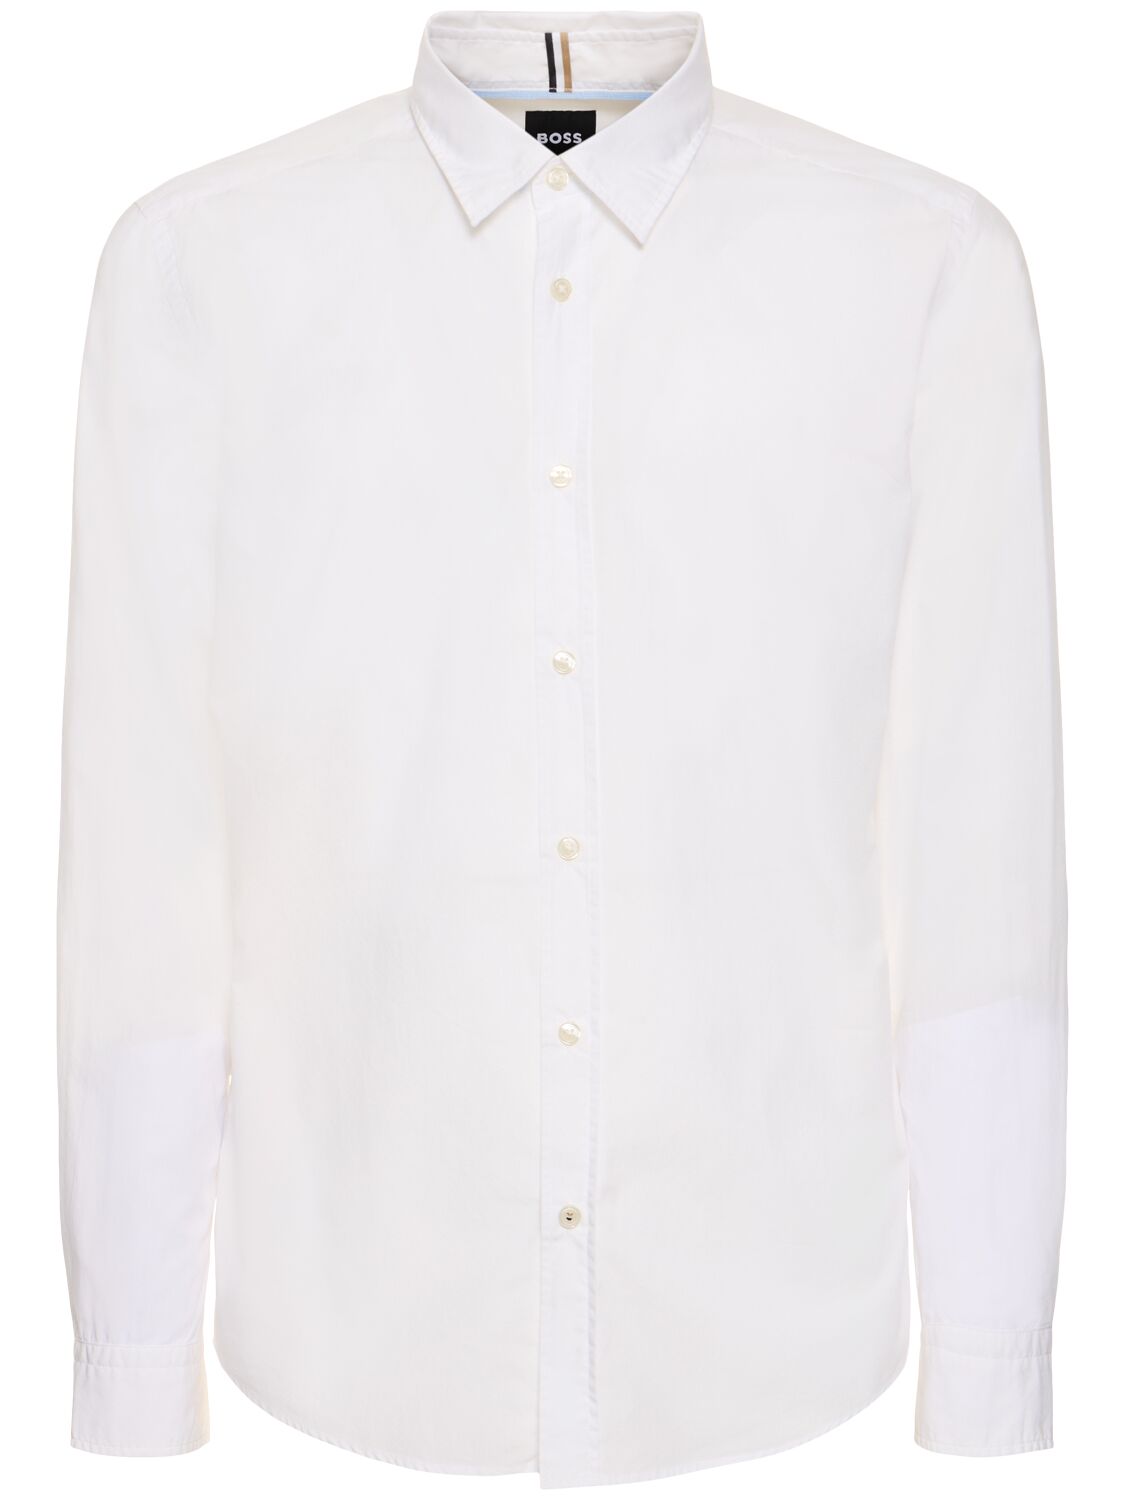 Hugo Boss S-roan Kent Cotton Shirt In White